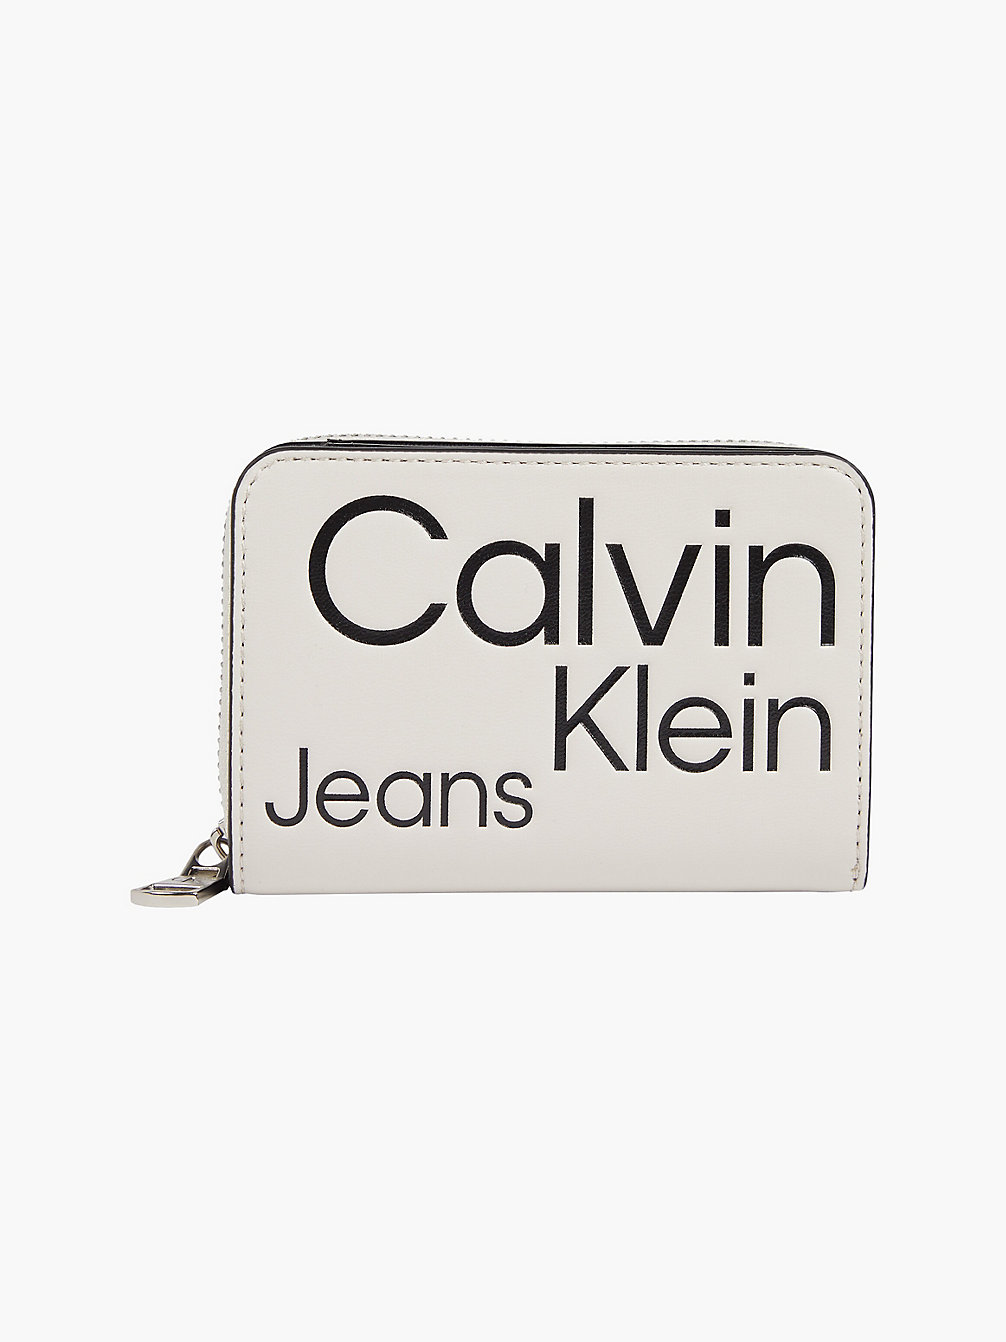 BEIGE AOP > Rfid-Portemonnee Met Rits Rondom En Logo > undefined dames - Calvin Klein